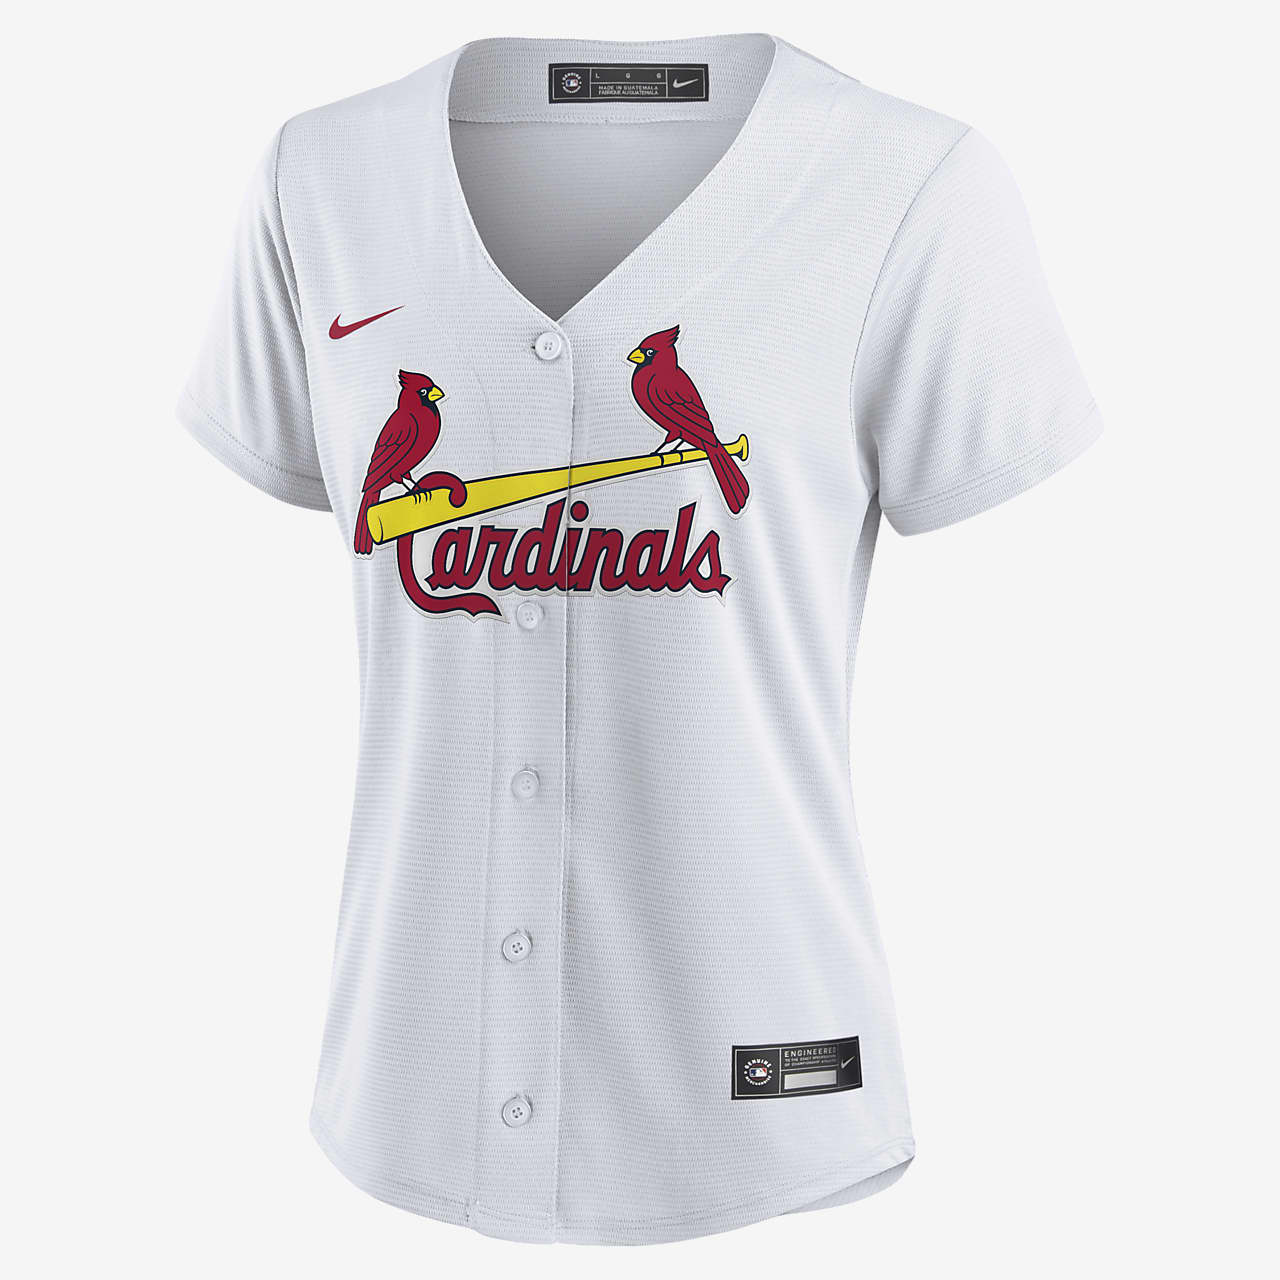 womens cardinals jersey